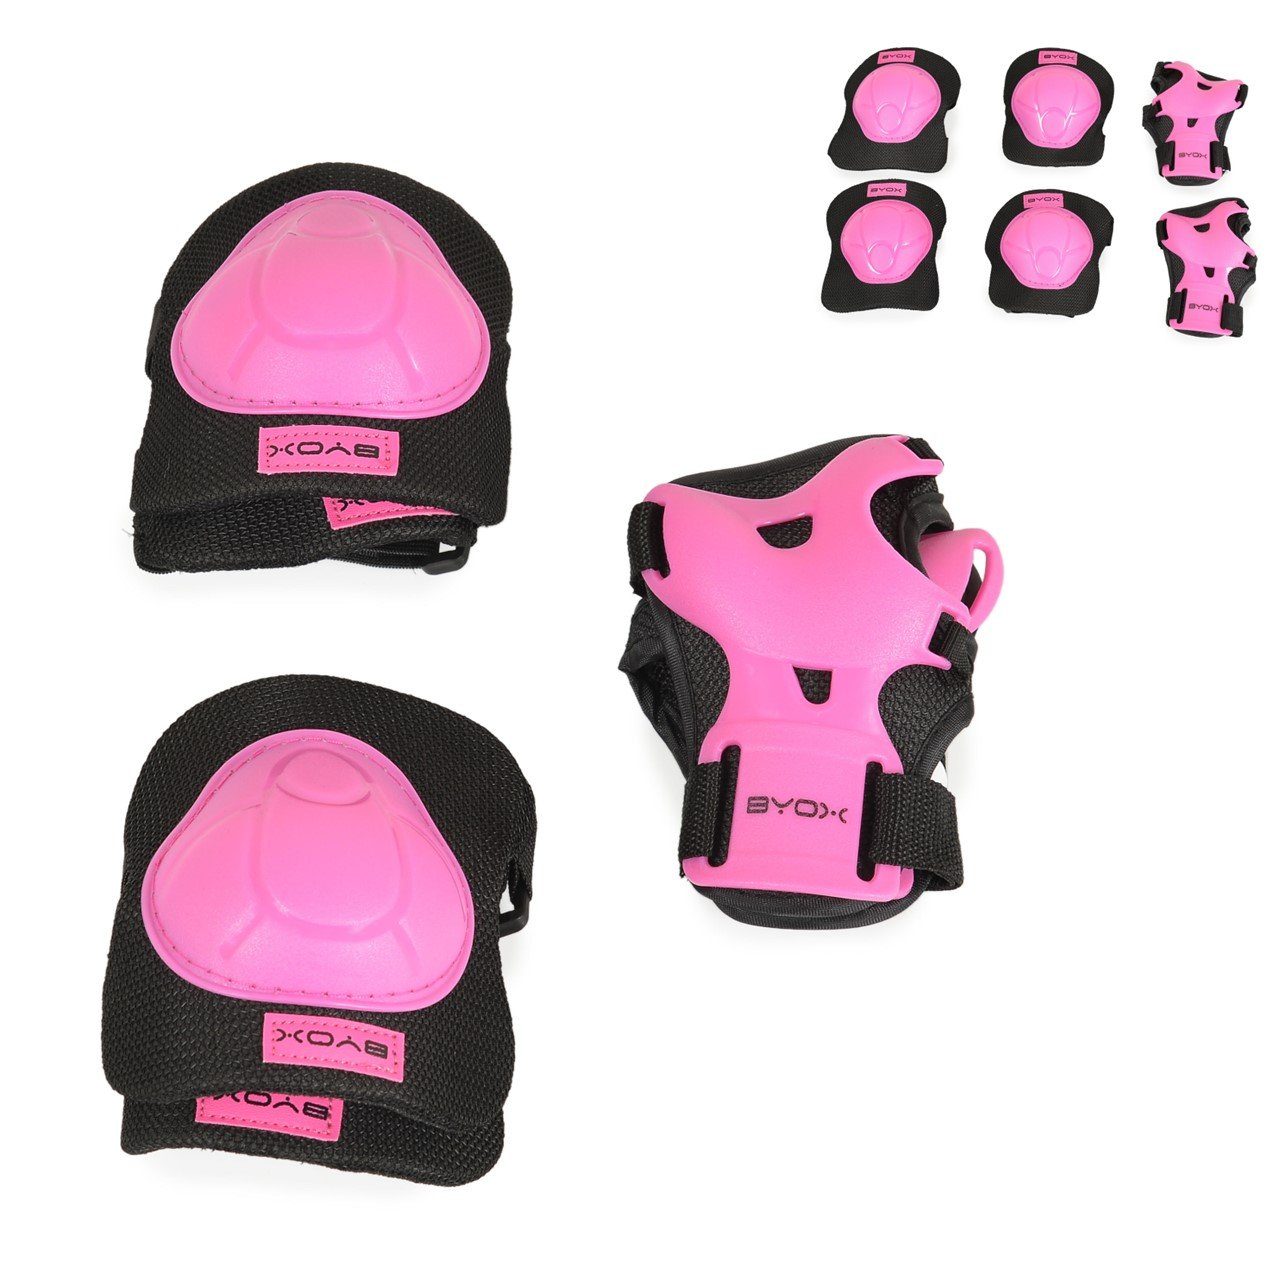 Byox Protektoren-Set Schutzausrüstung H110, Protektoren Ellenbogen- Handgelenk- und Knieschützer pink